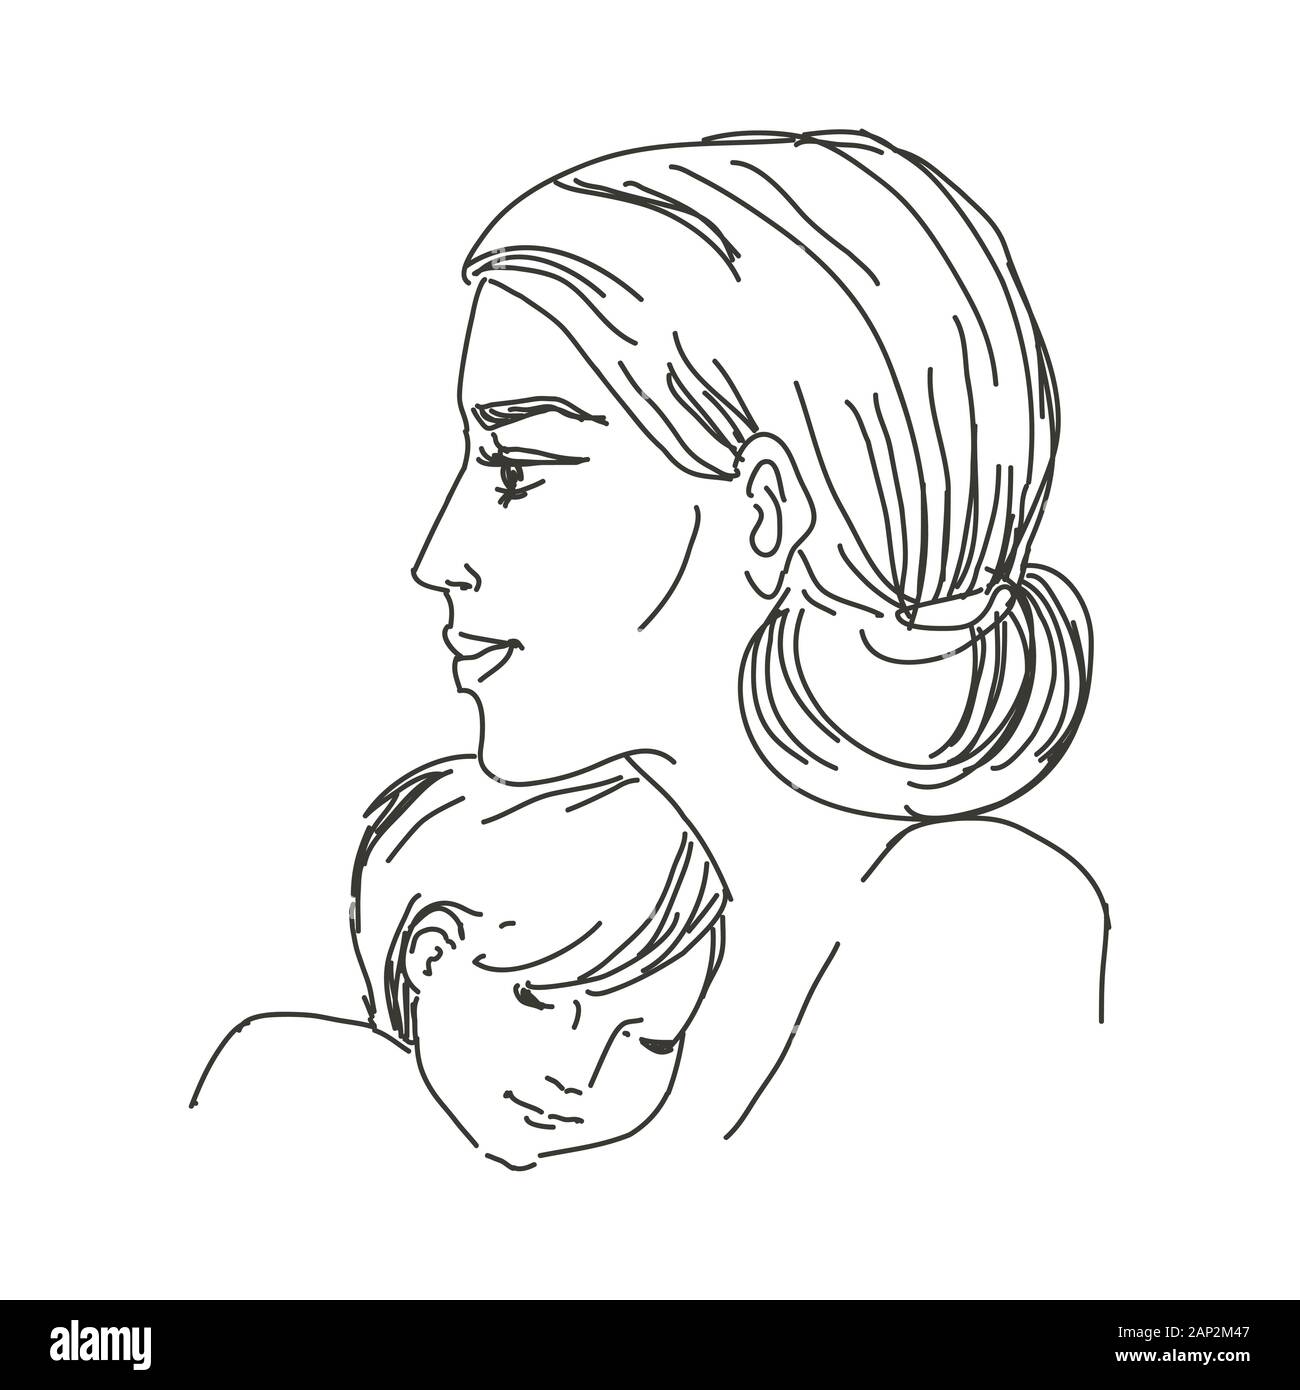 Schizzo in linee. In bianco e nero. Una donna con un bambino in braccio. Una giovane madre abbraccia il suo bambino. Vettore isolato. Illustrazione Vettoriale